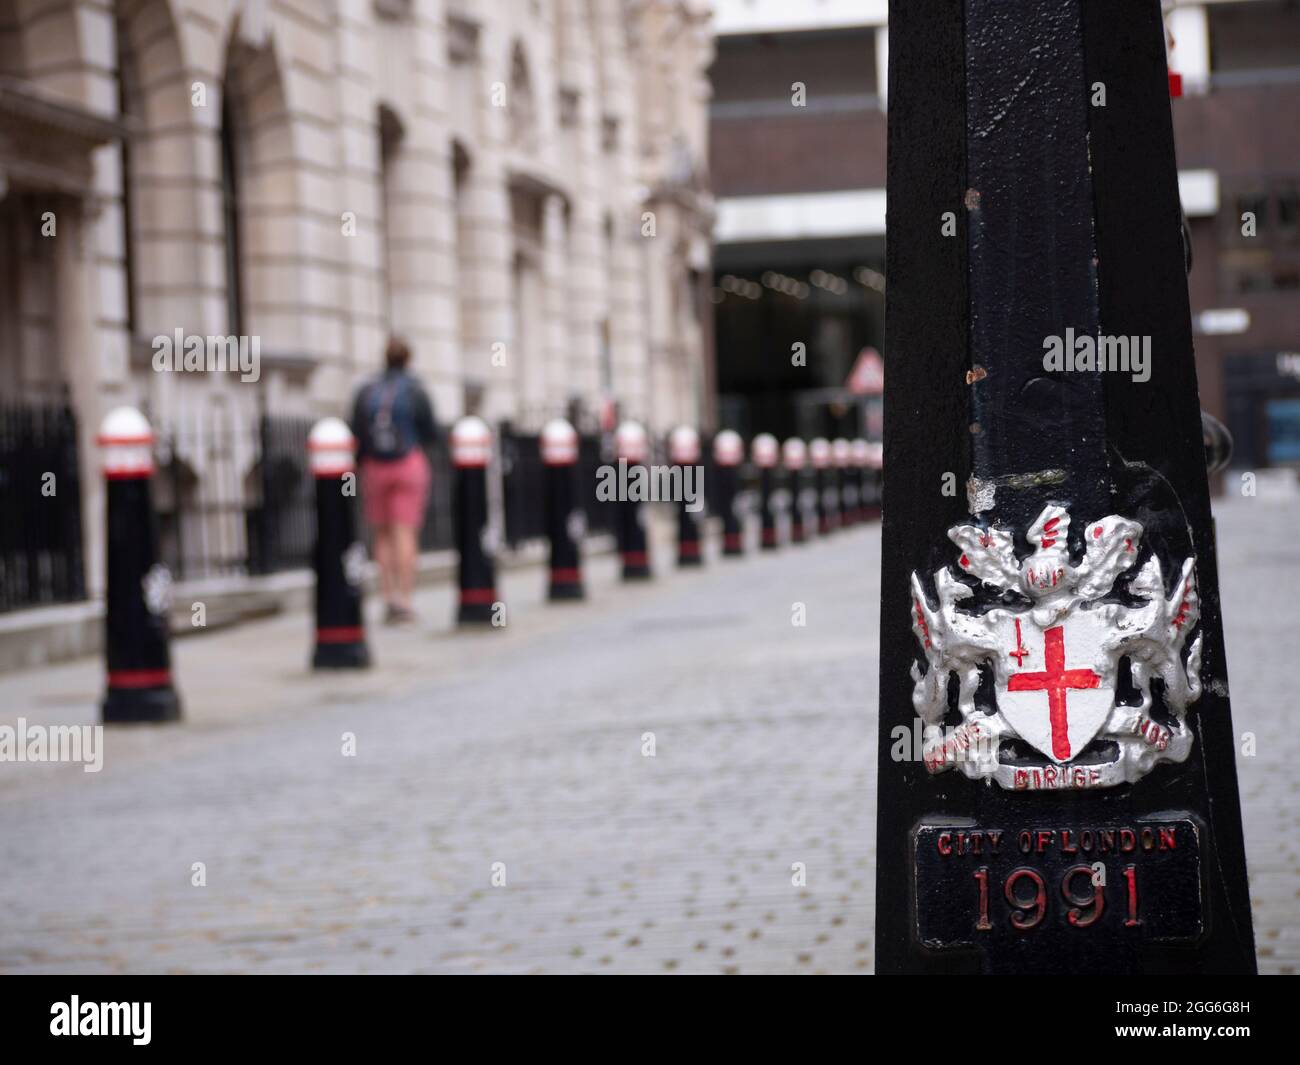 Emblème et cime de la ville de Londres sur le bollard de rue avec les armoiries de la ville de Londres, avec la devise Domine dirige nos traduits en tant que Lord guide nous Banque D'Images